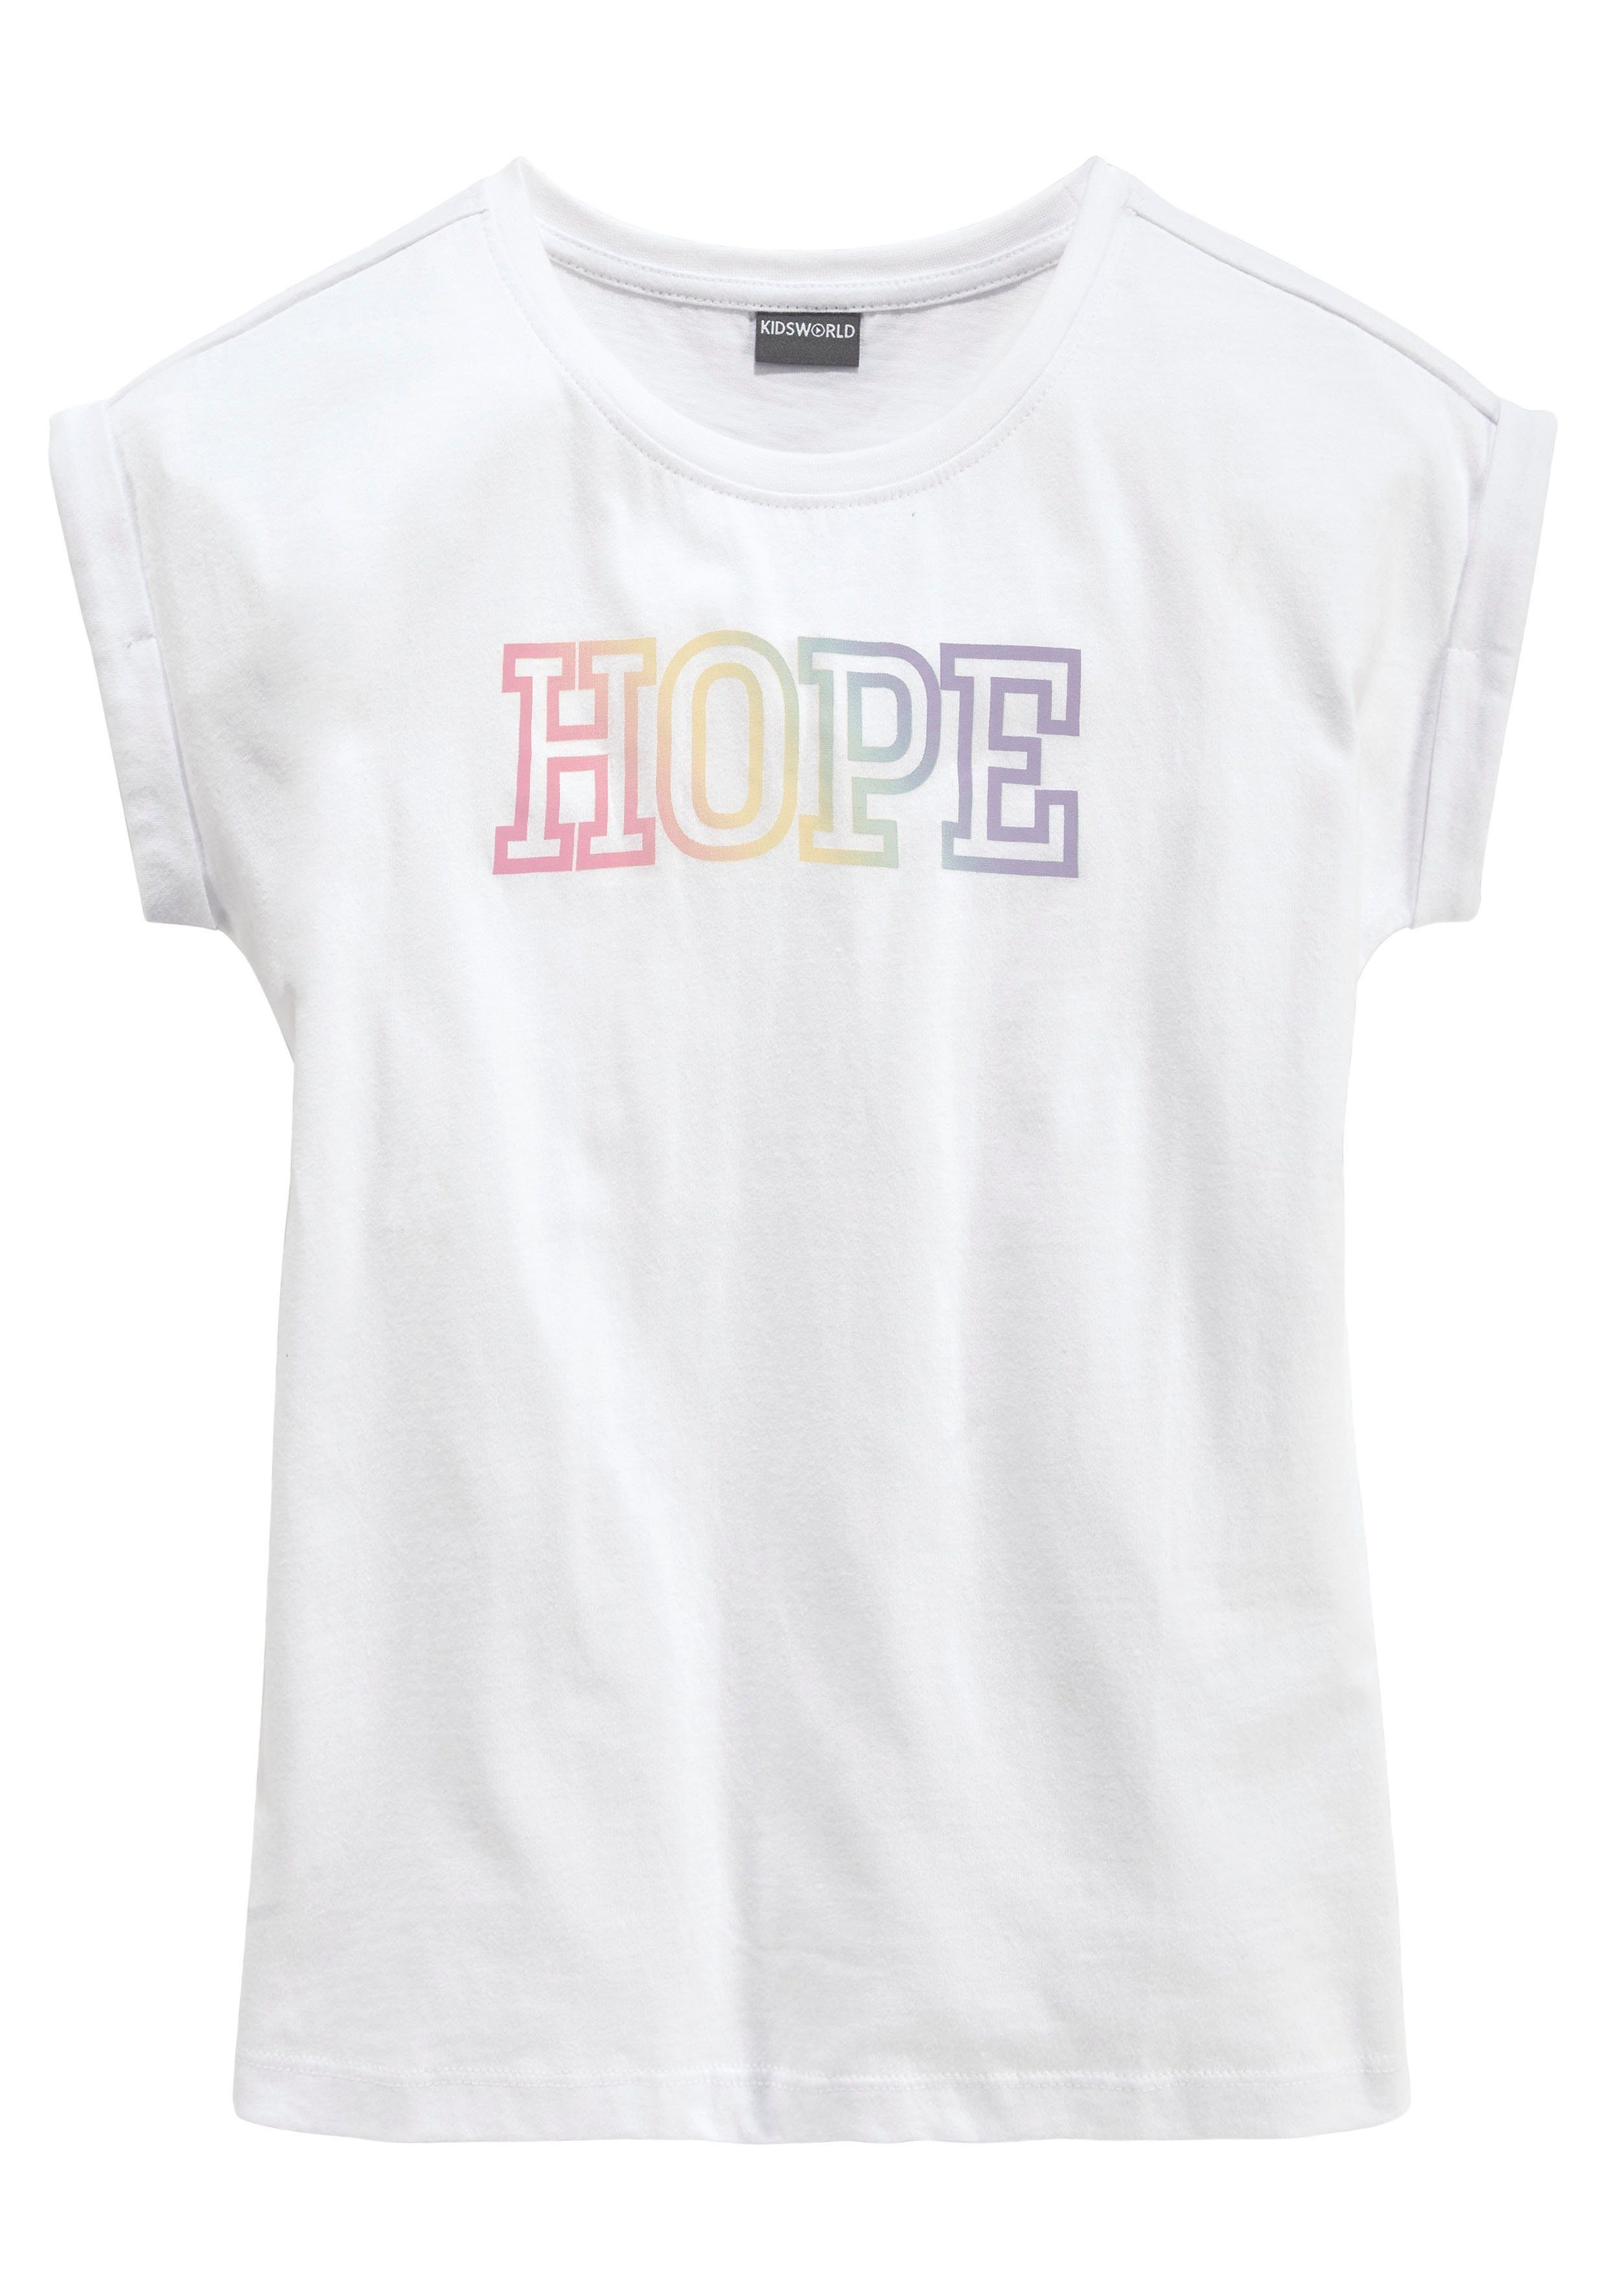 KIDSWORLD T-Shirt HOPE mit Statementdruck